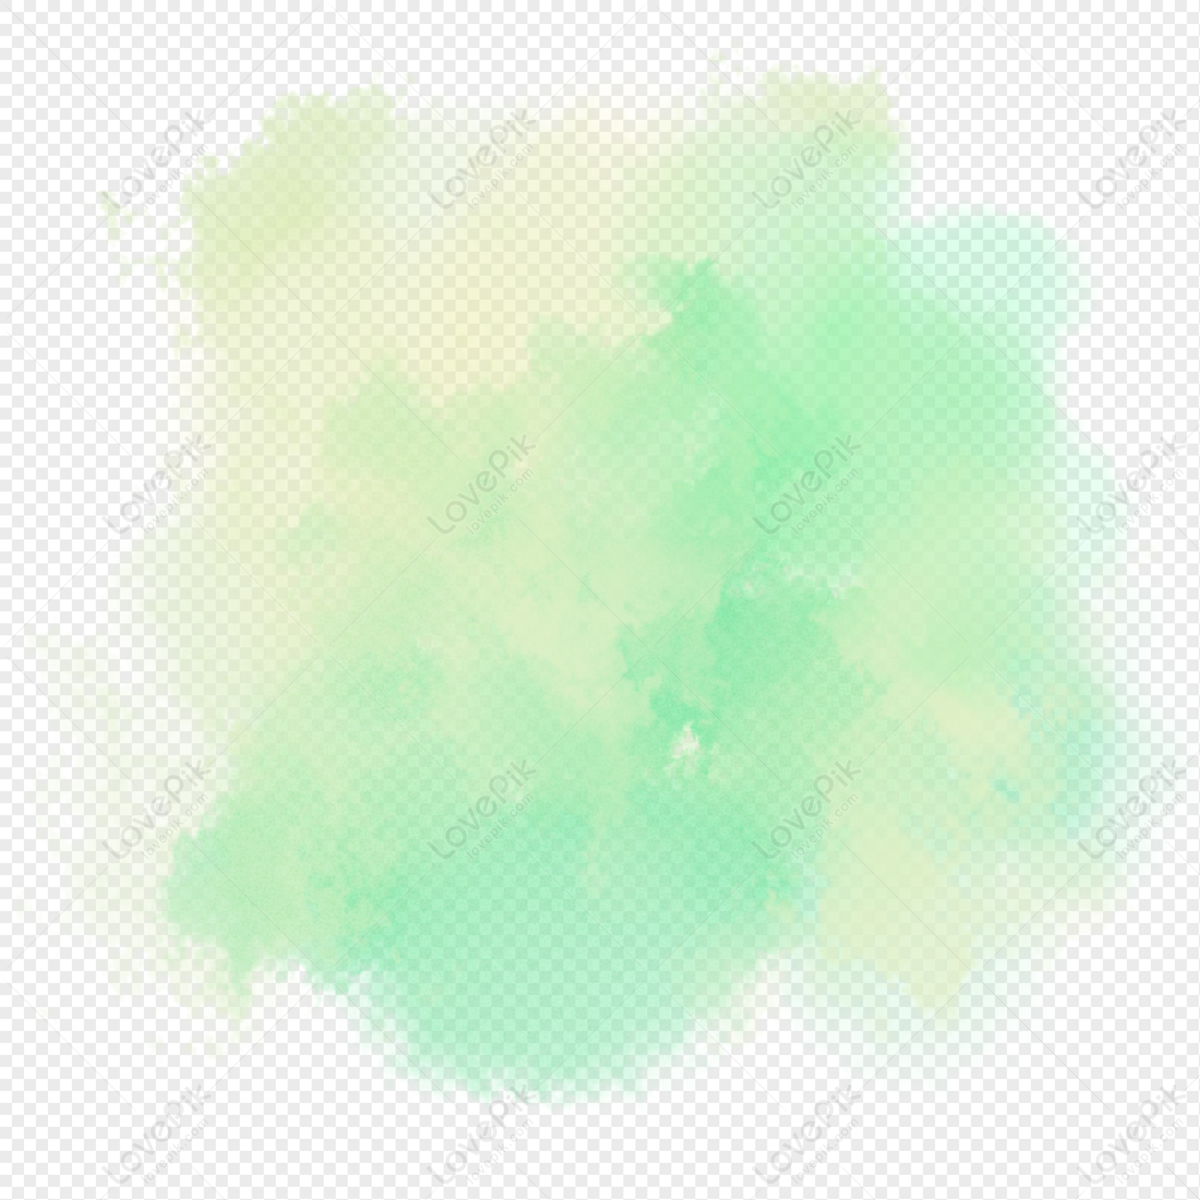 Hãy ngắm nhìn các sắc thái xanh tươi trong gradient này, chúng sẽ làm bạn say mê với màu sắc này. Đừng bỏ qua cơ hội khám phá hình ảnh đẹp này!